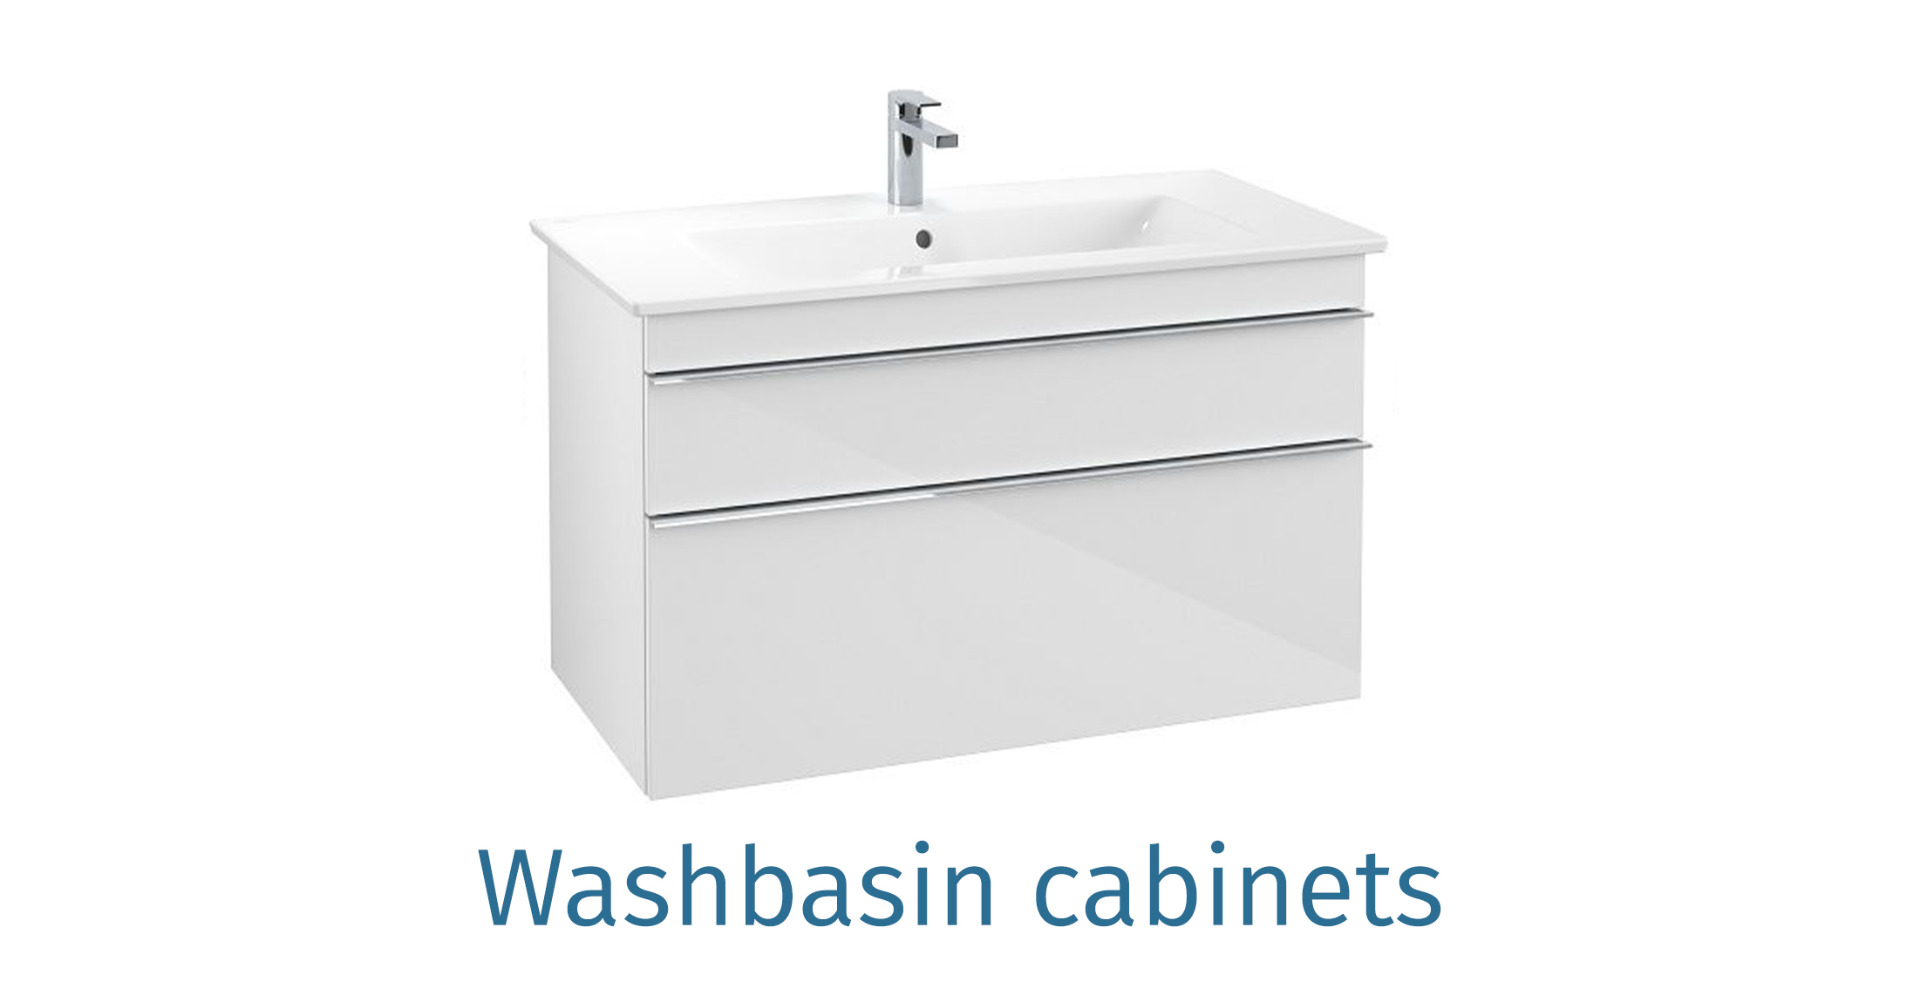 Washbasin cabinets